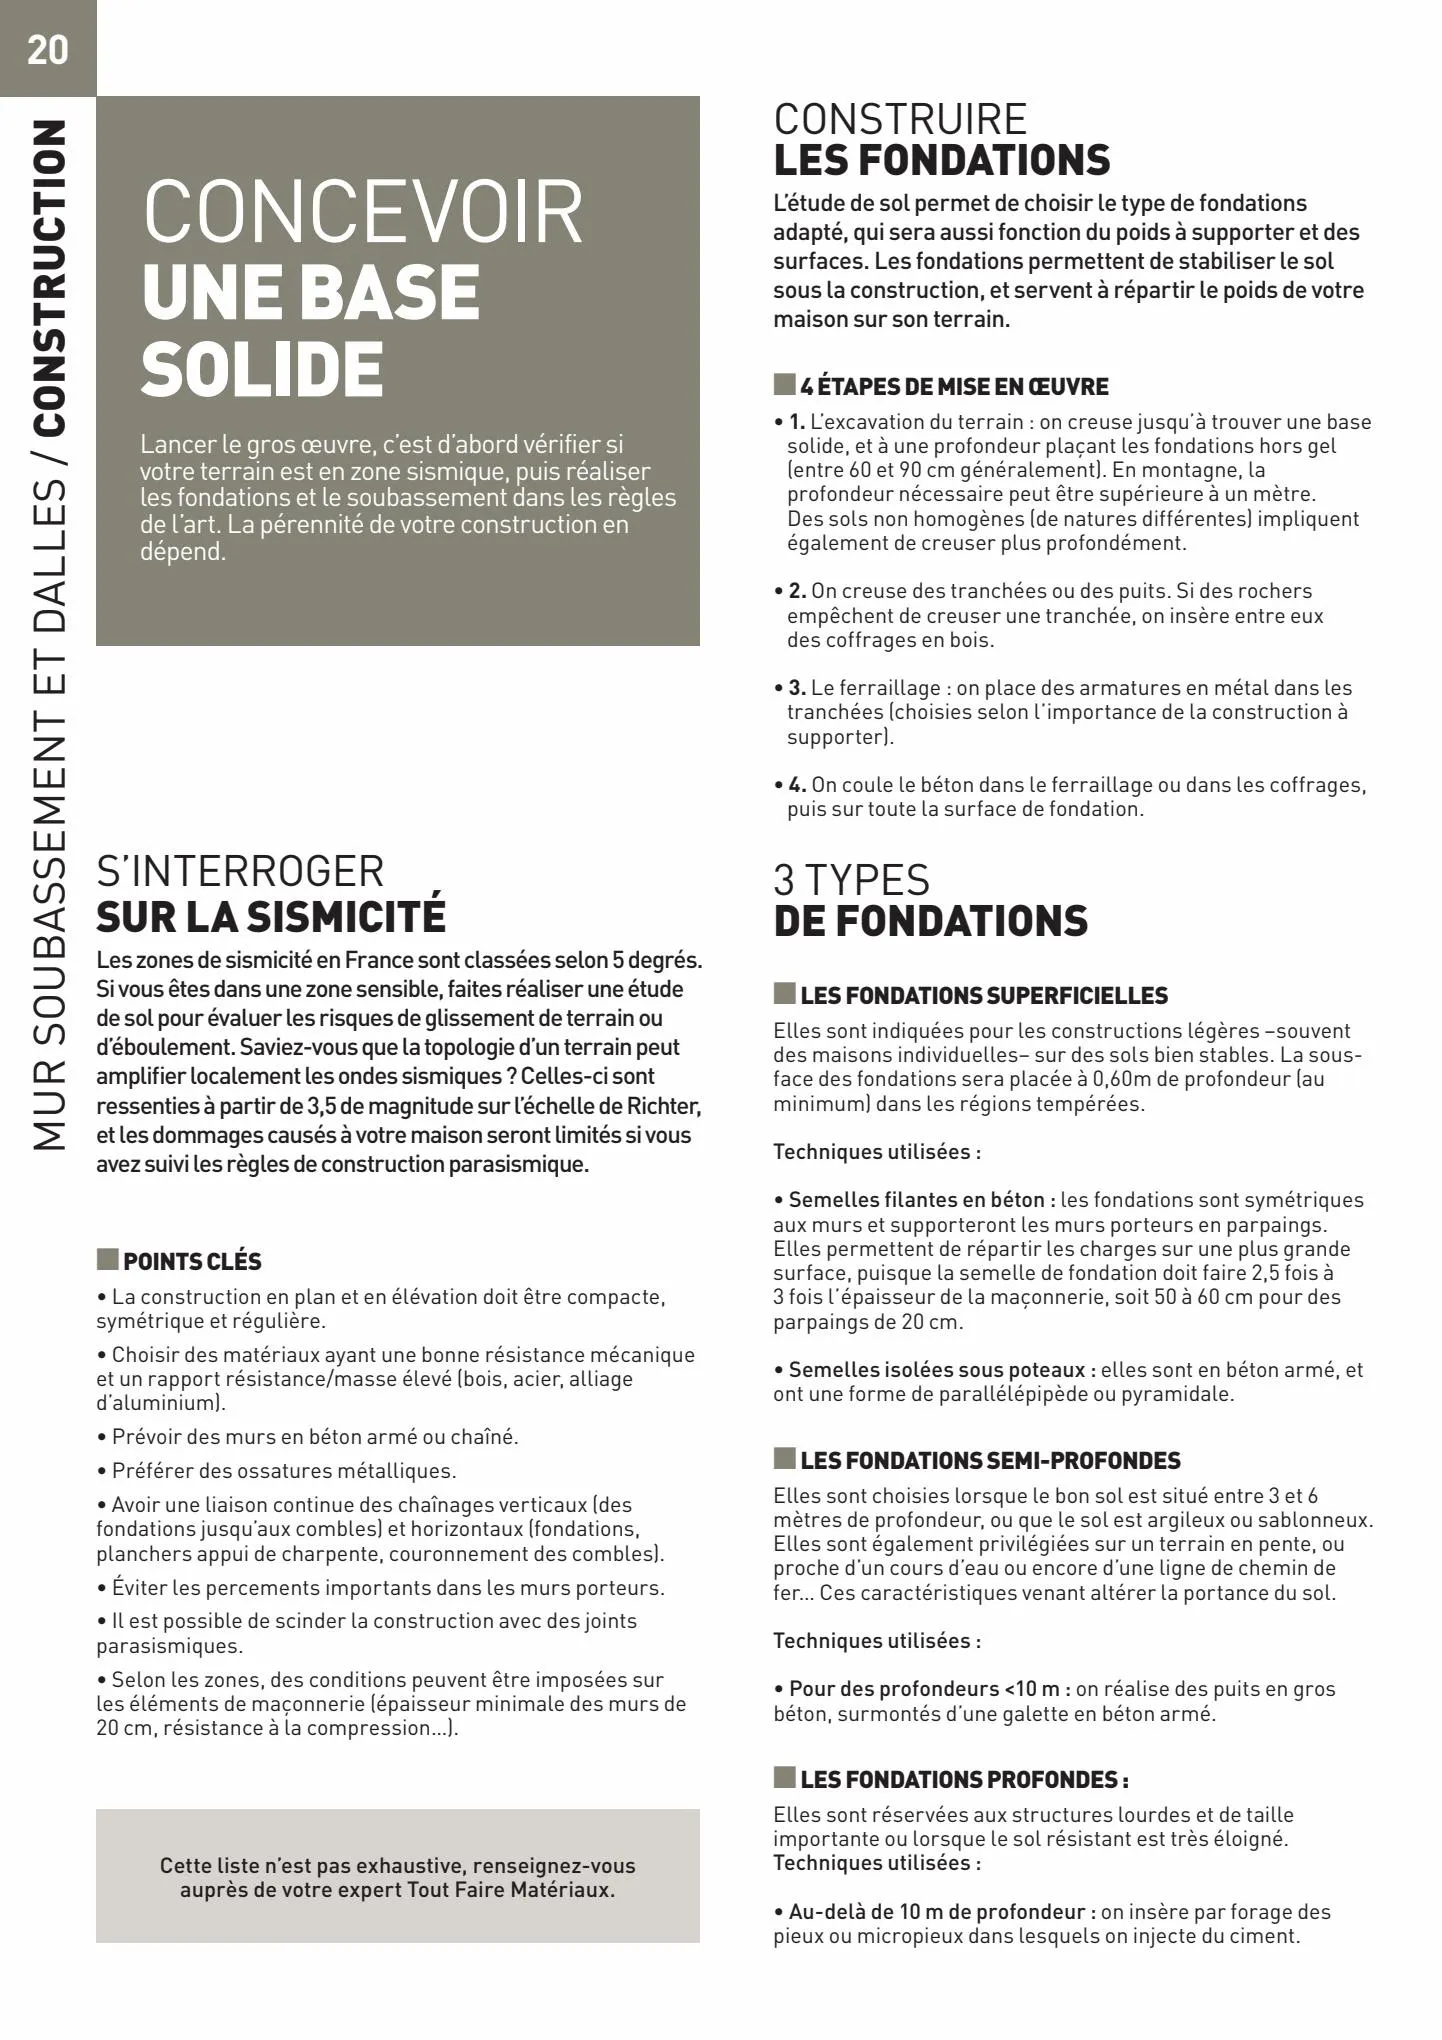 Catalogue Catalogue Tout faire matériaux, page 00020